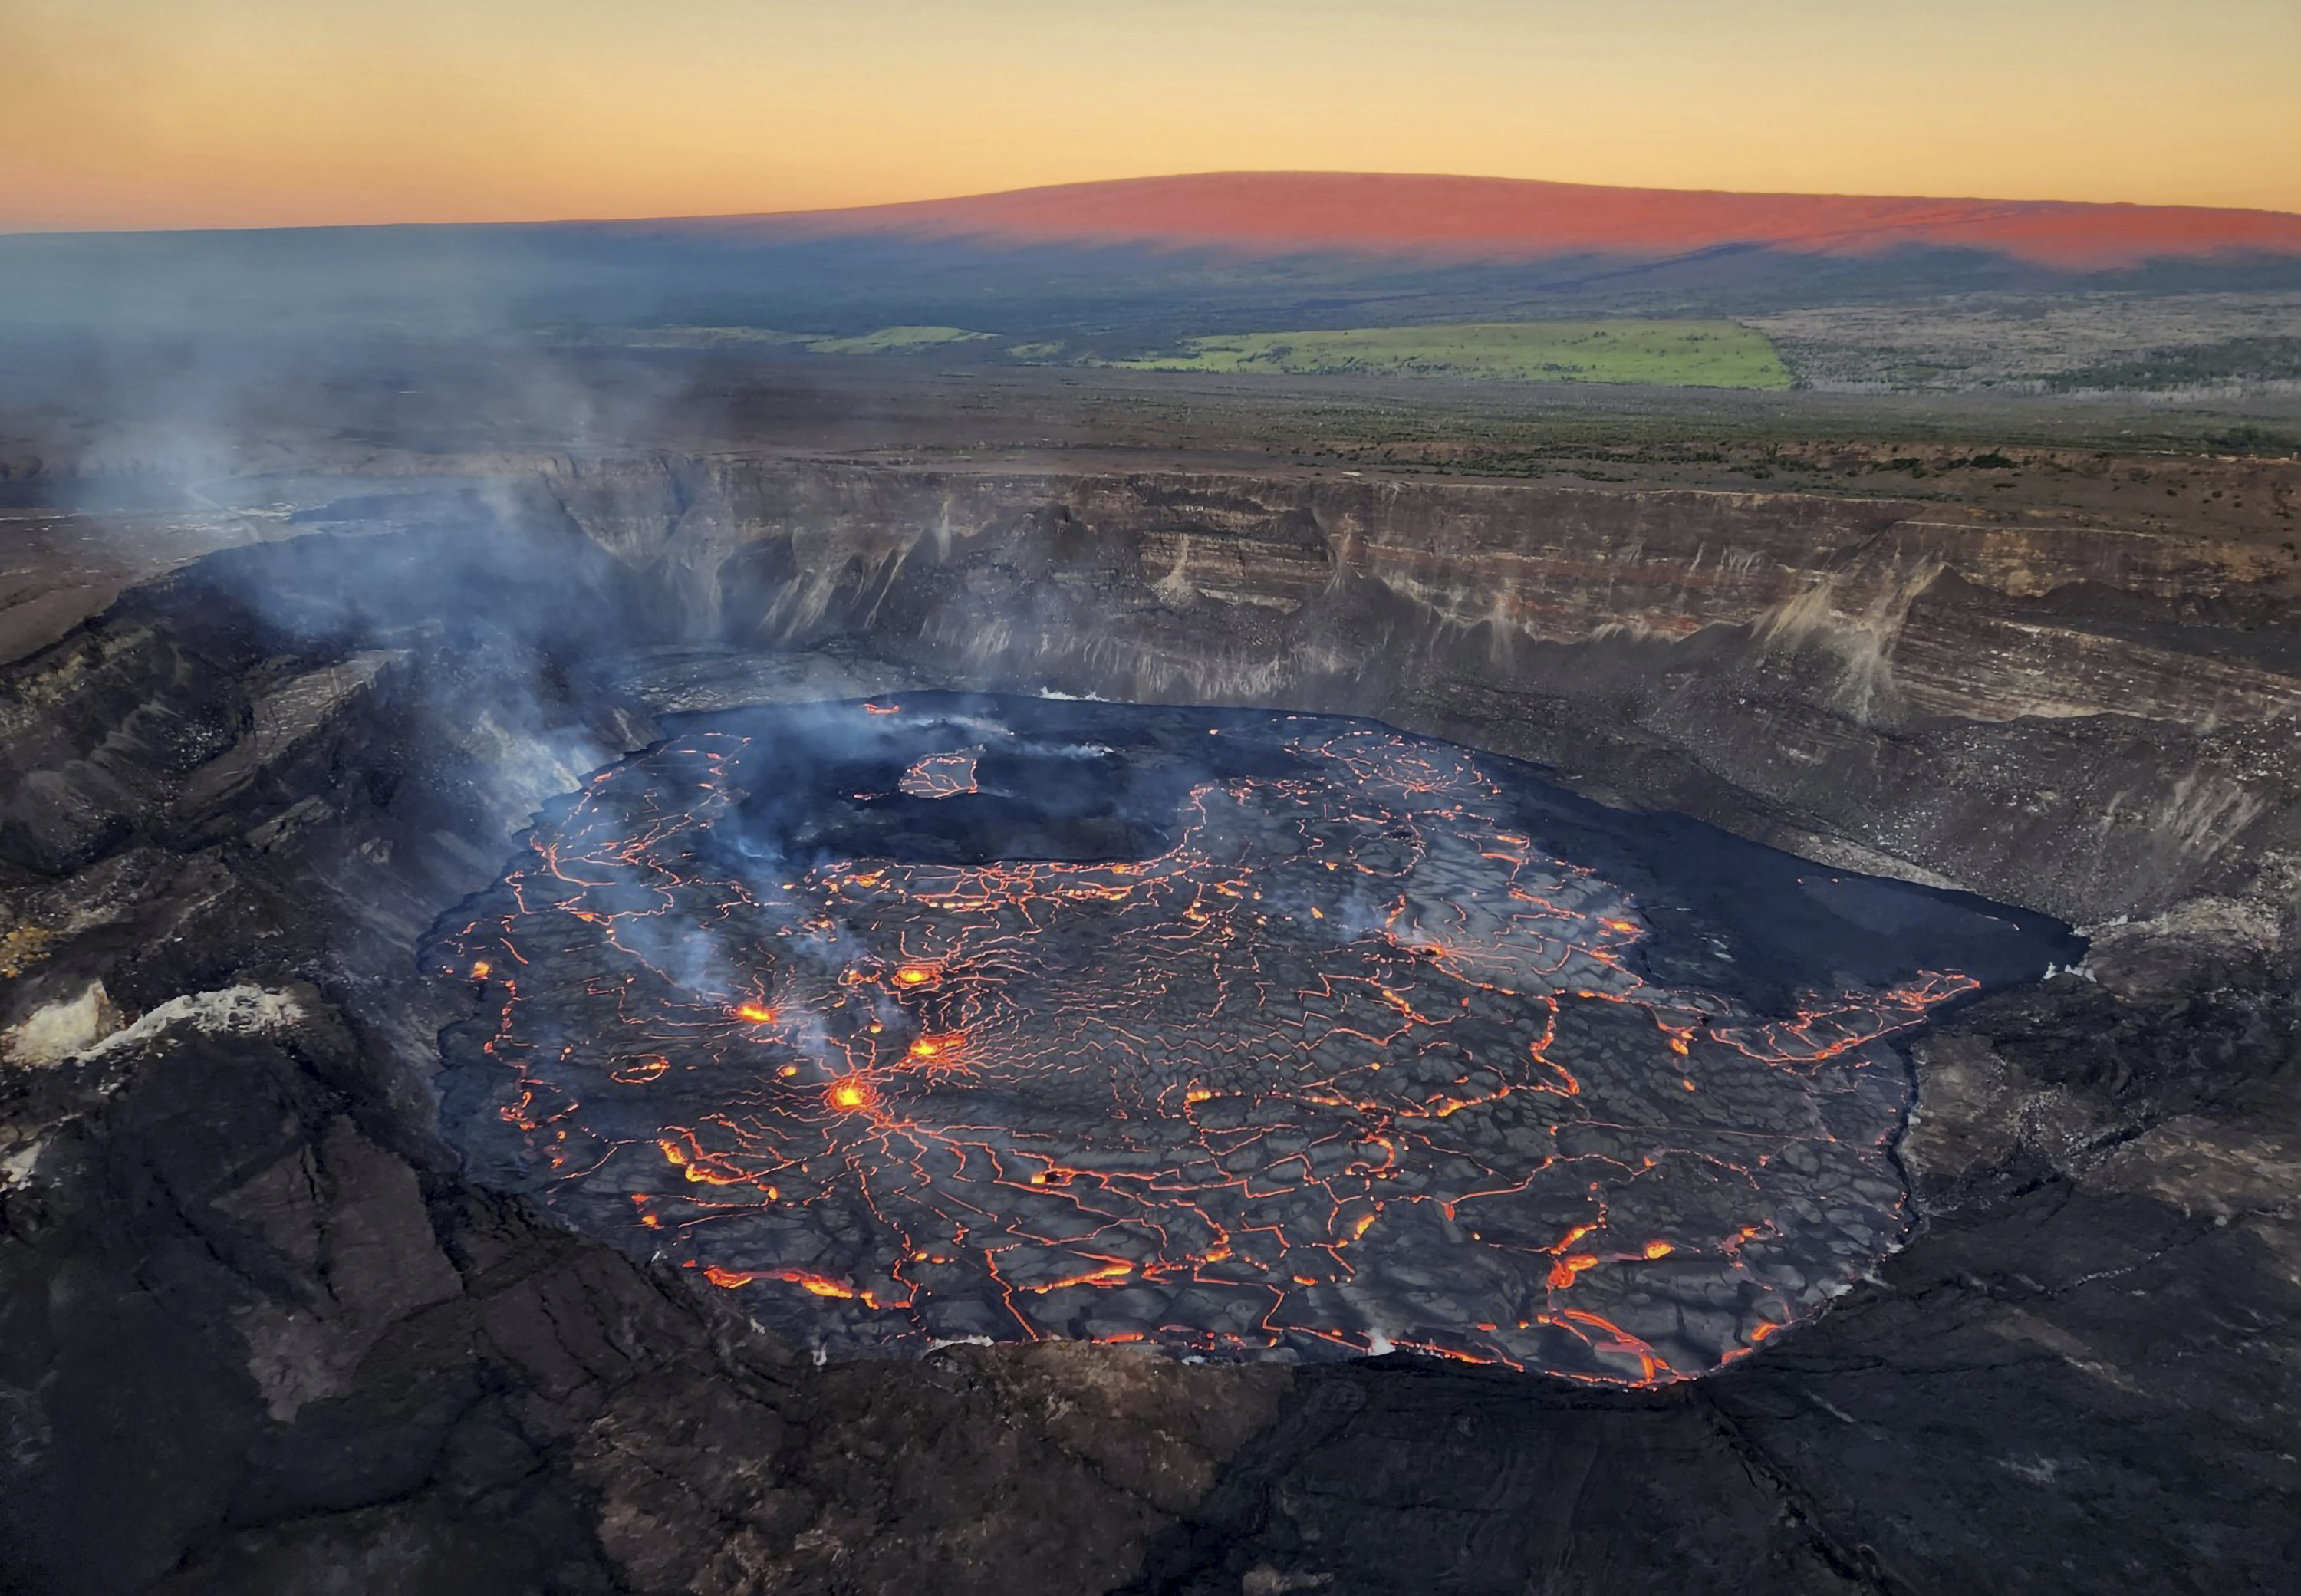 ARCHIVO - La imagen proporcionada por el Servicio Geológico de Estados Unidos muestra el interior del cráter del volcán Kilauea, el 6 de enero de 2023. (Servicio Geológico de Estados Unidos vía AP, archivo)